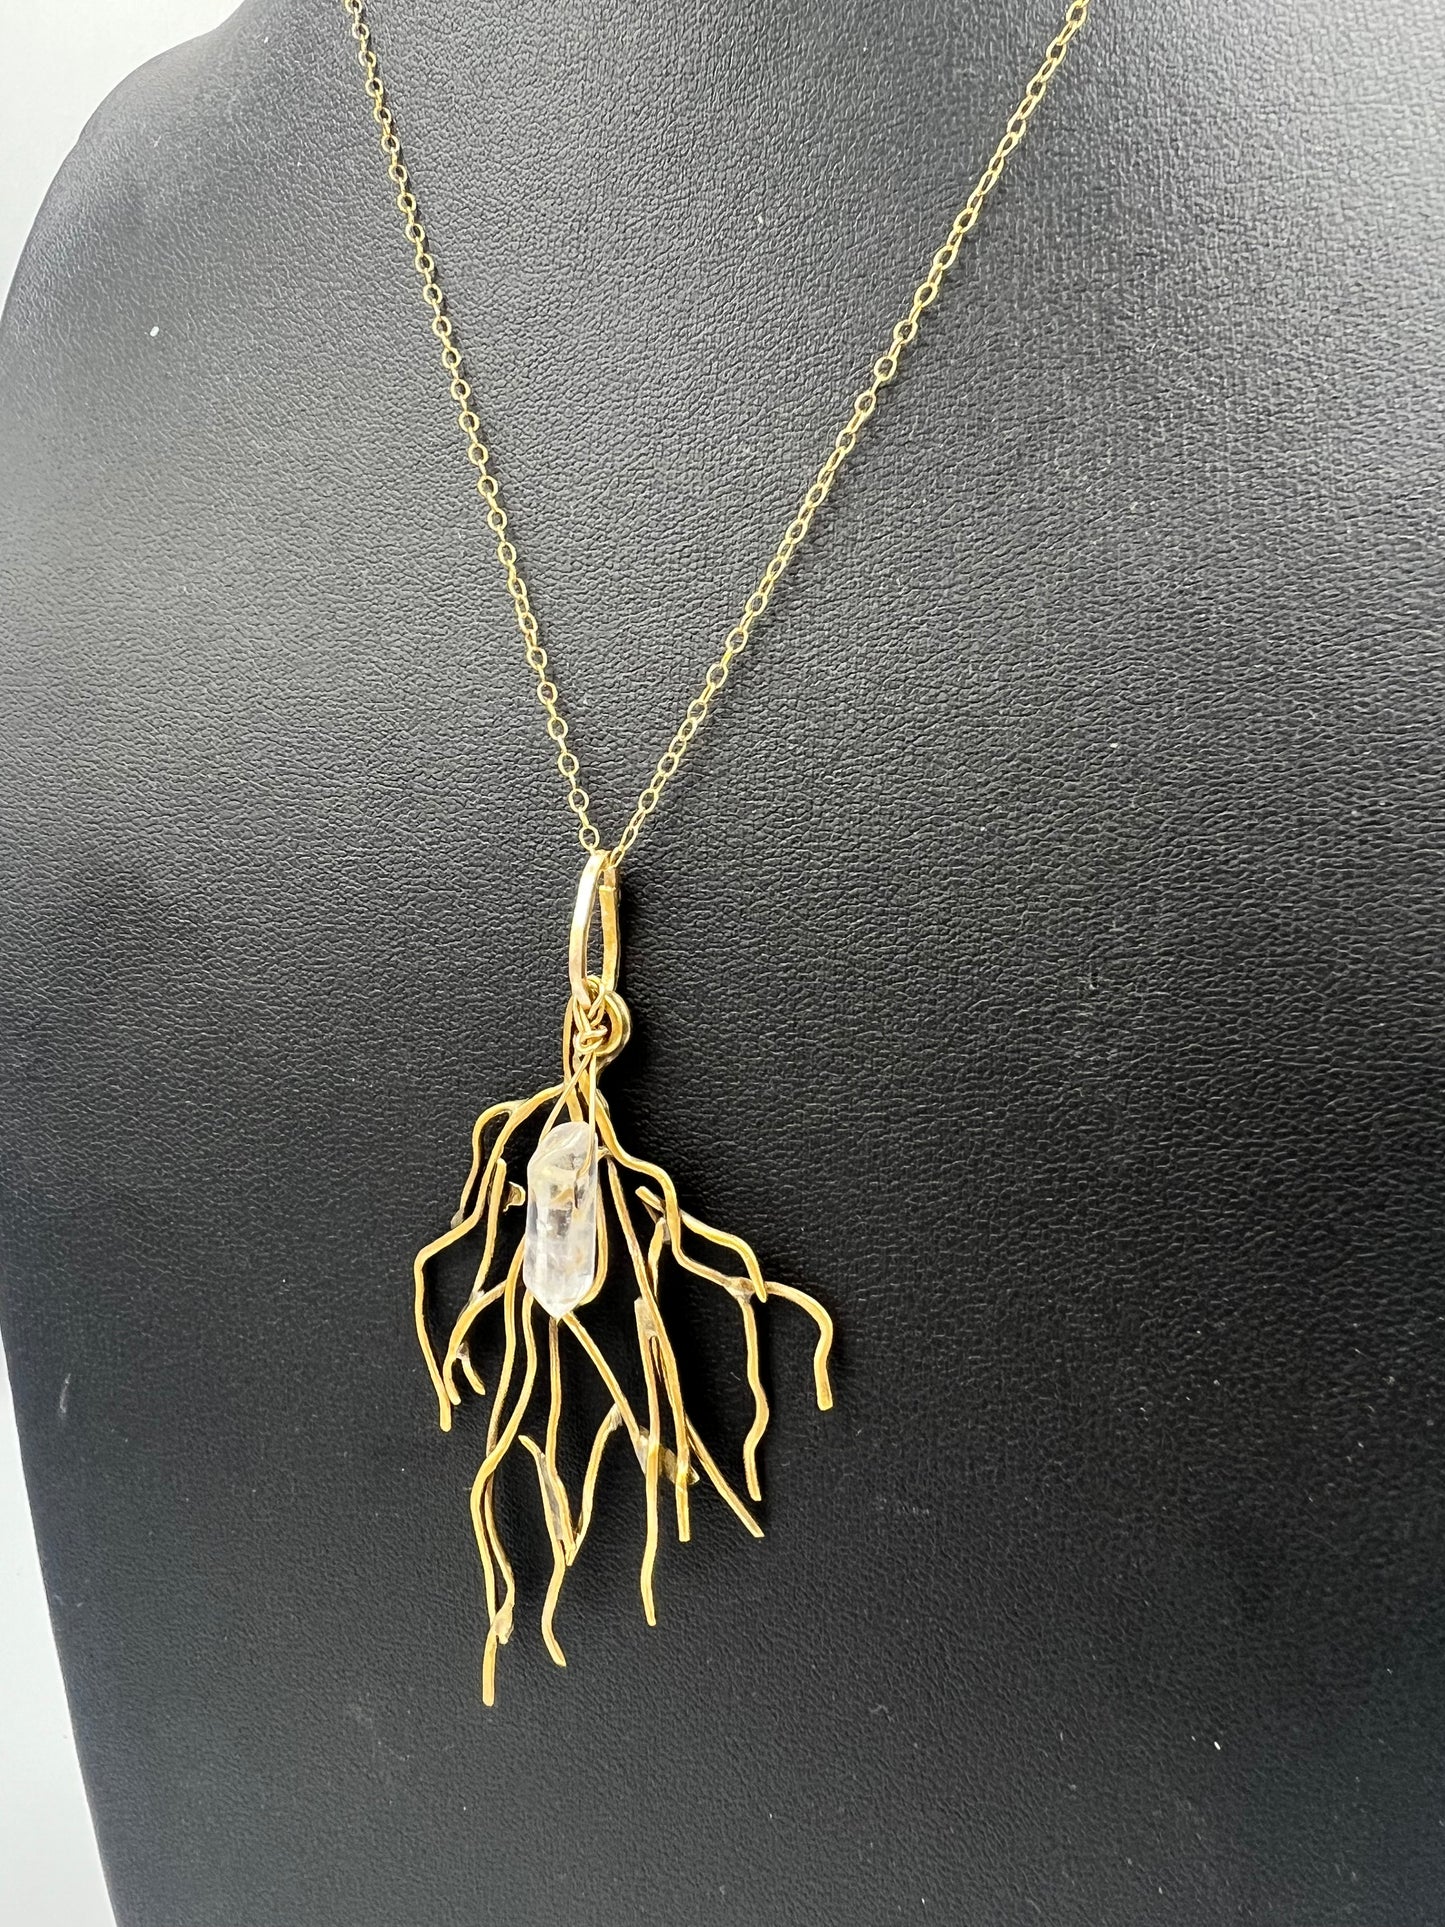 Sparkle Motion: Branches Necklace with Quartz